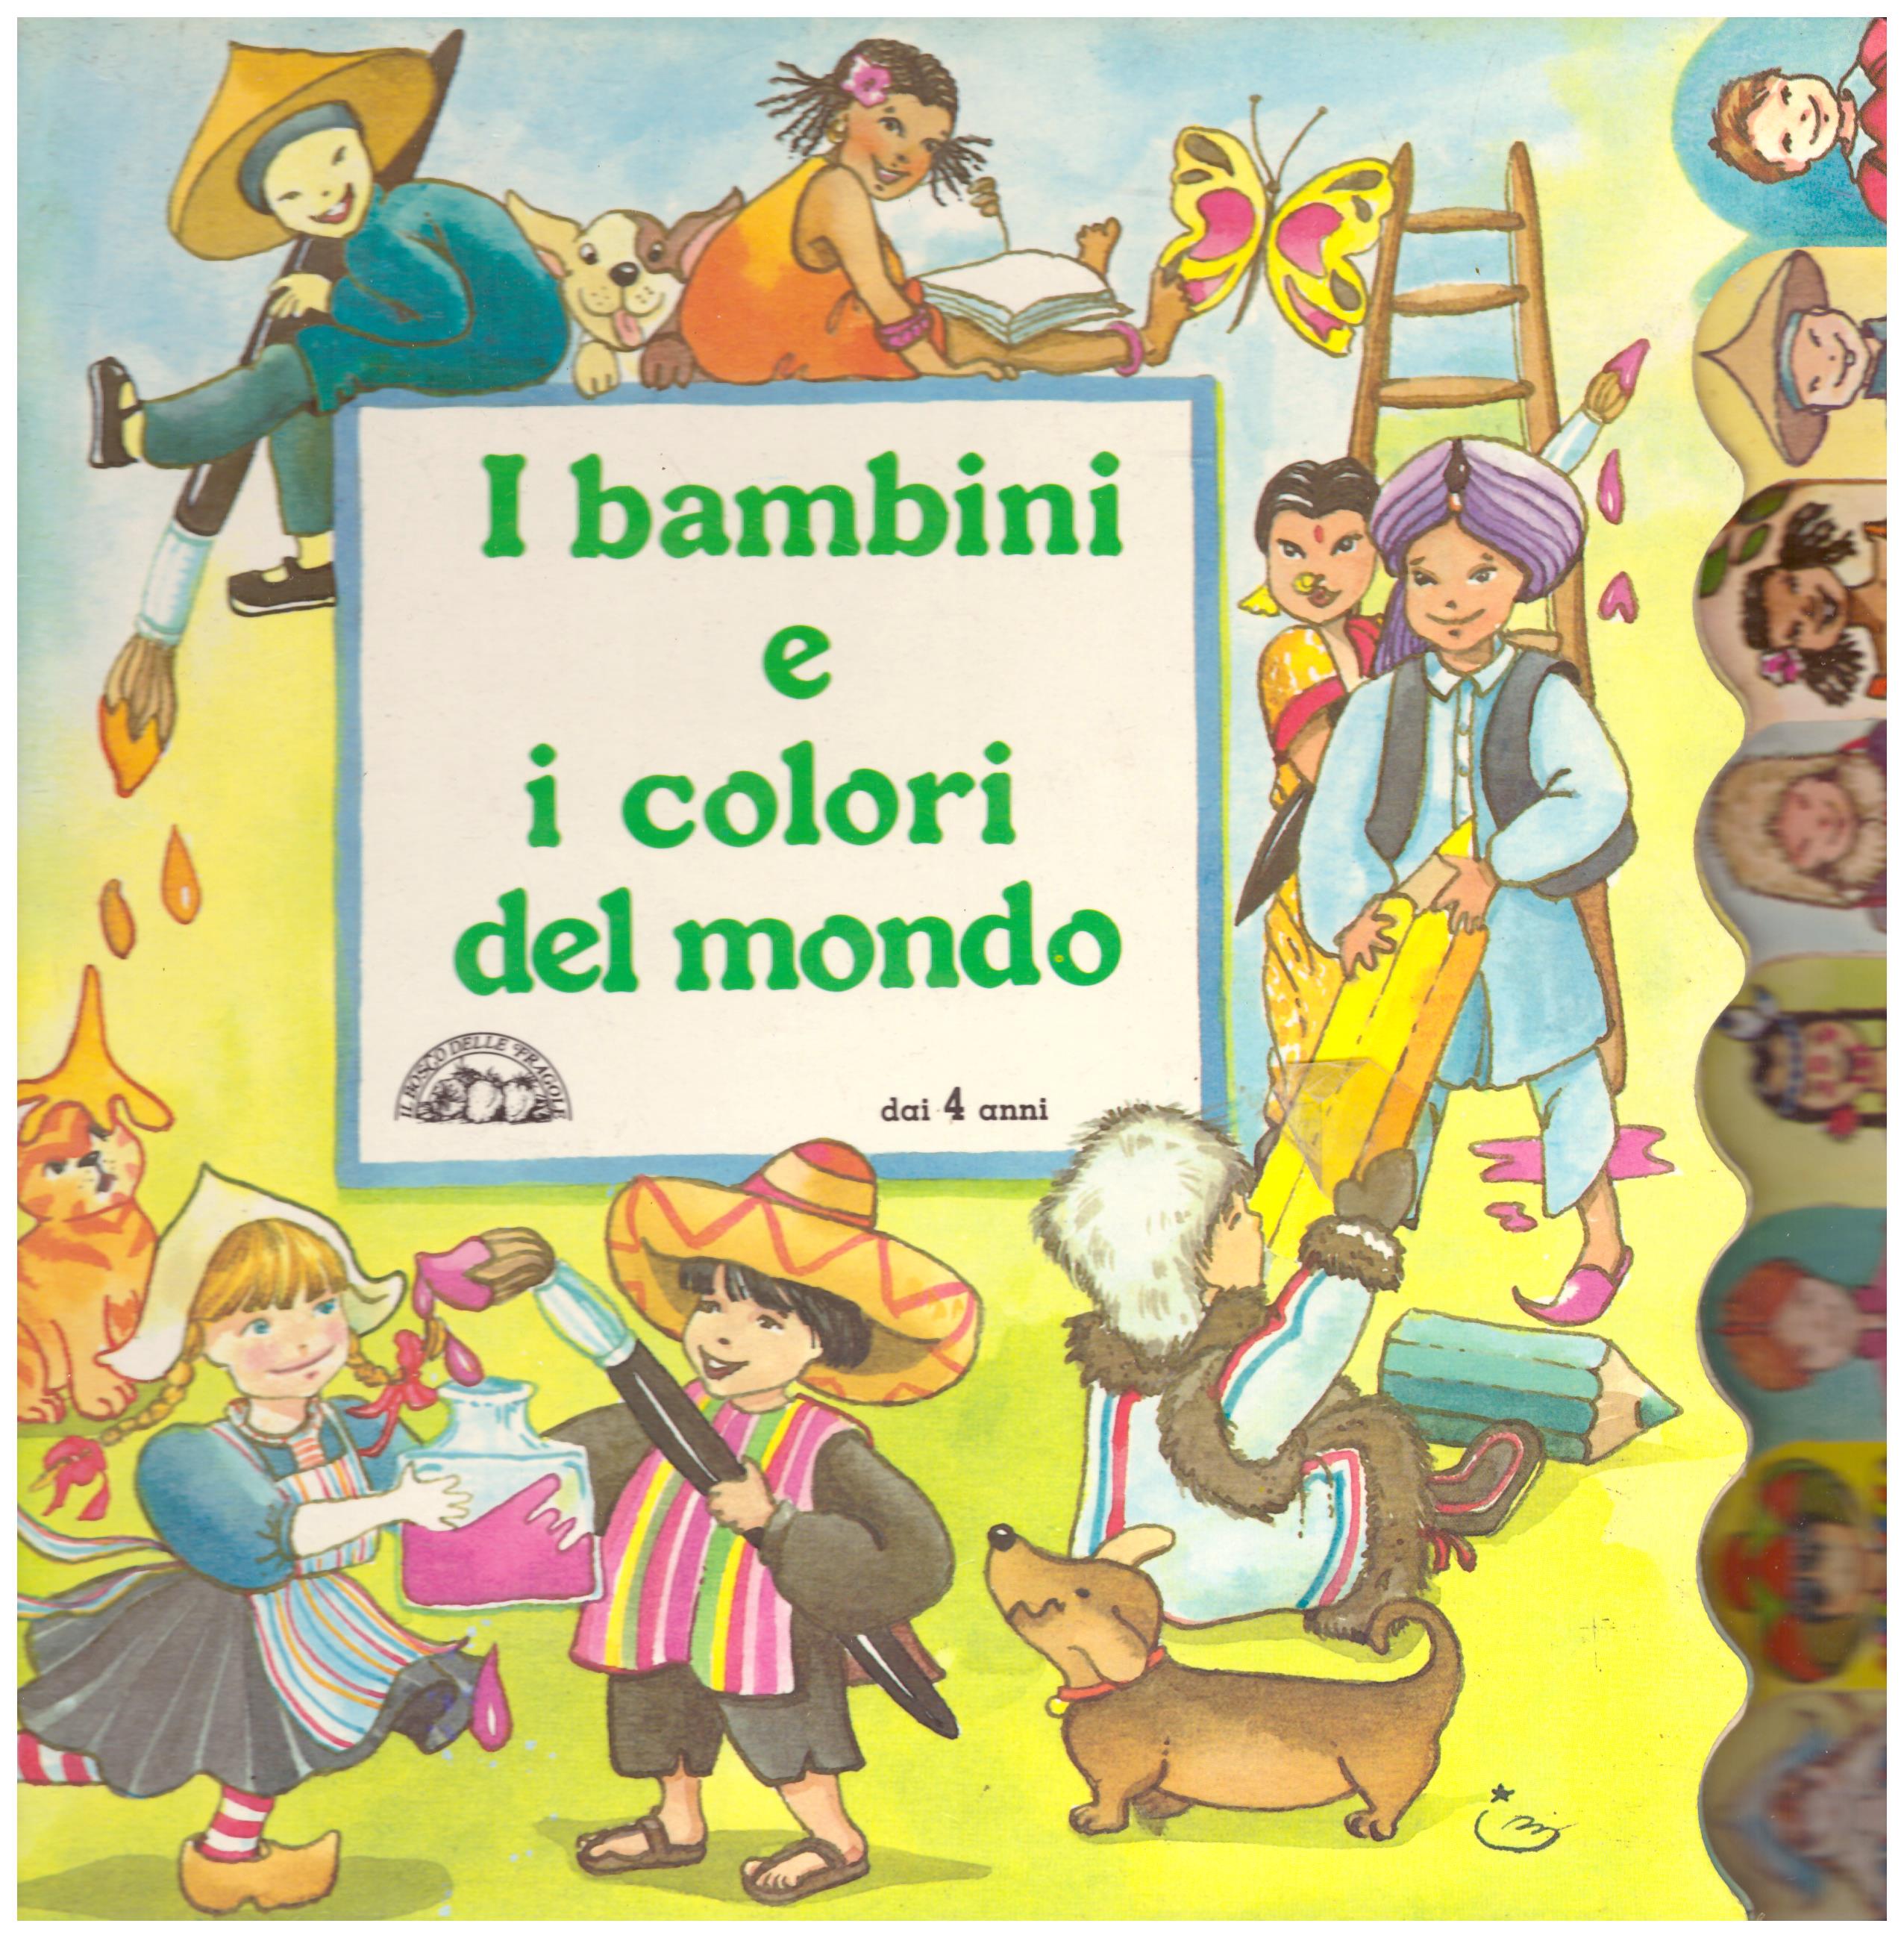 Titolo: I bambini e i colori del mondo  Autore: AA.VV.  Editore: il basco delle fragole, 1989